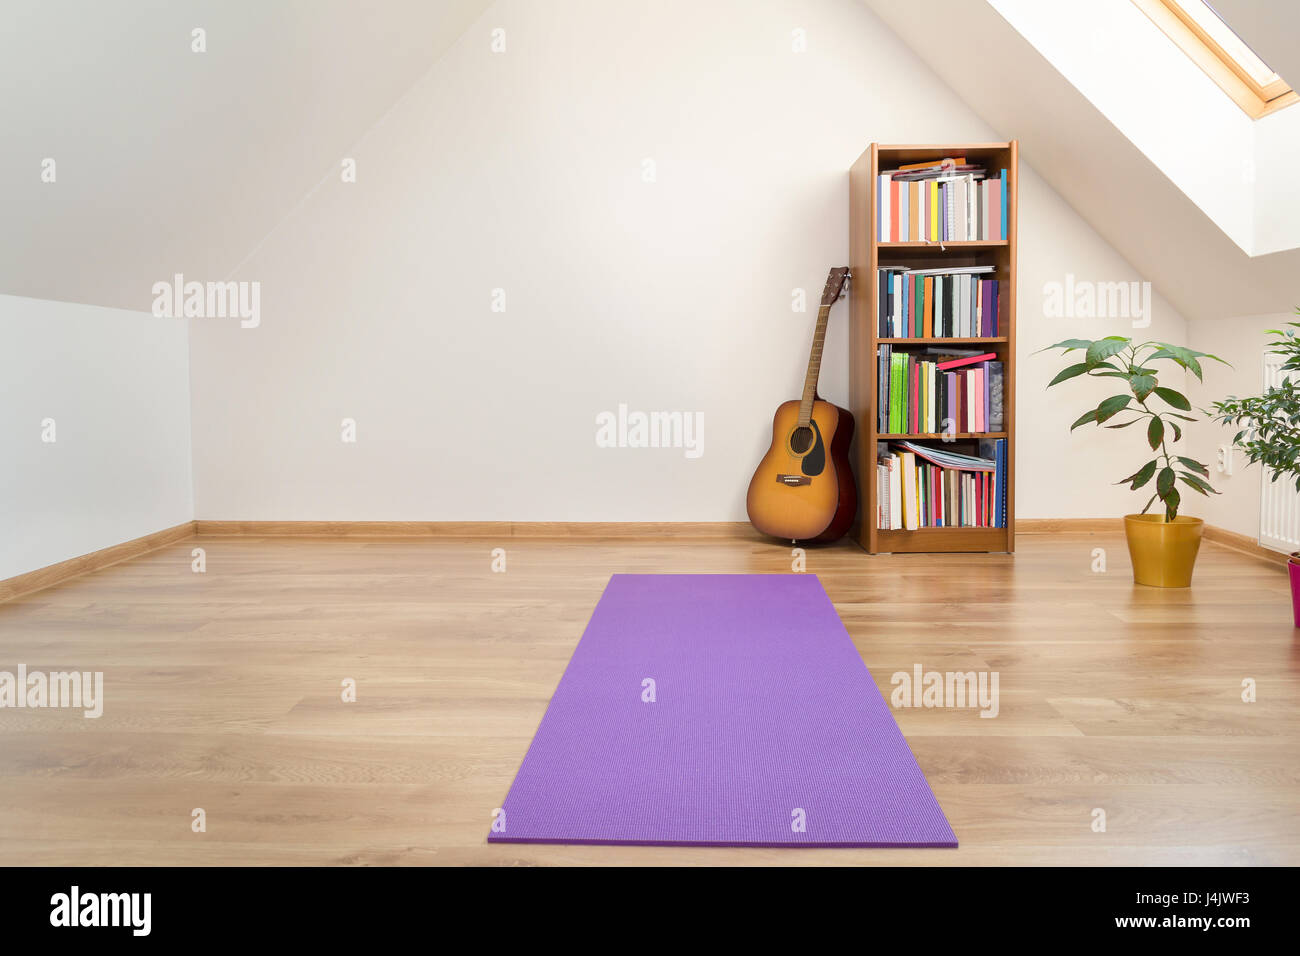 Materassino yoga in vuote loft room interior Foto Stock